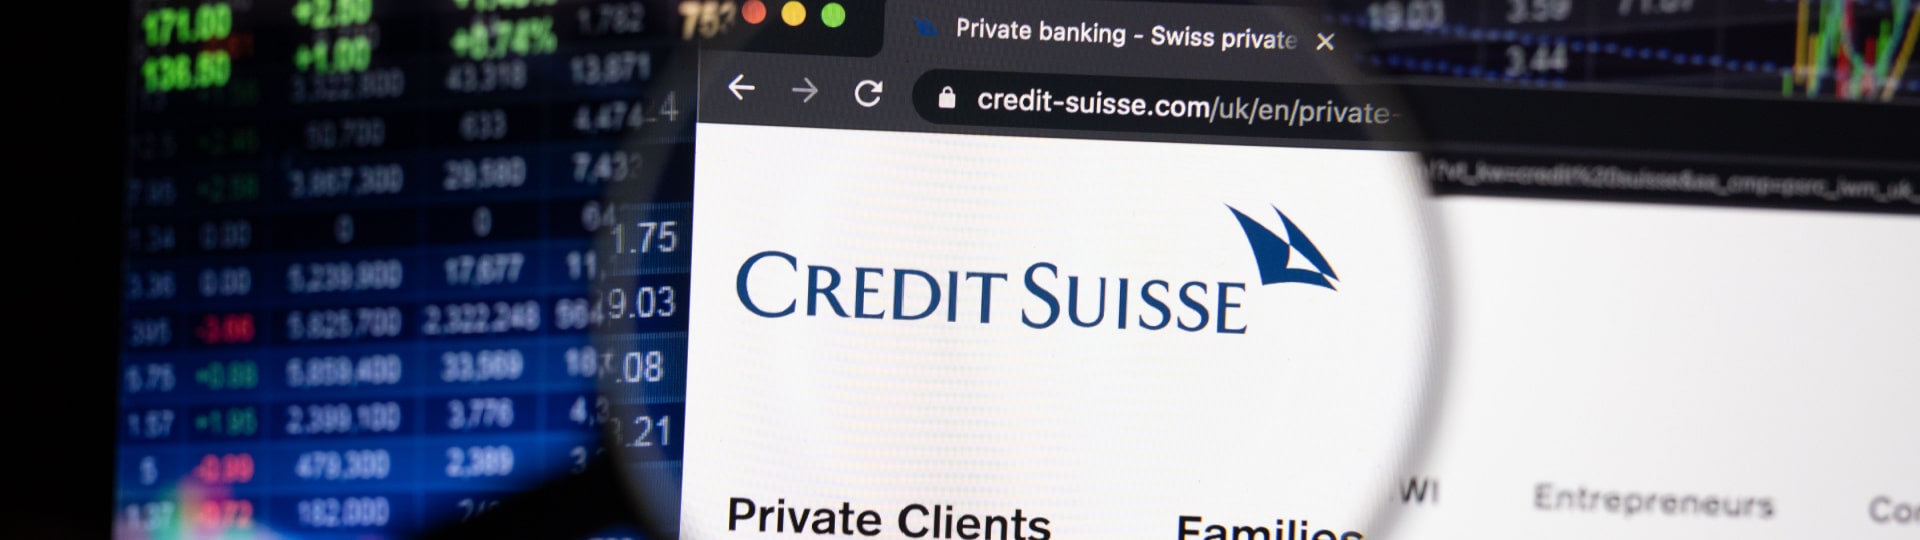 Švýcarská banka Credit Suisse zjistila závažné nedostatky ve výkazech